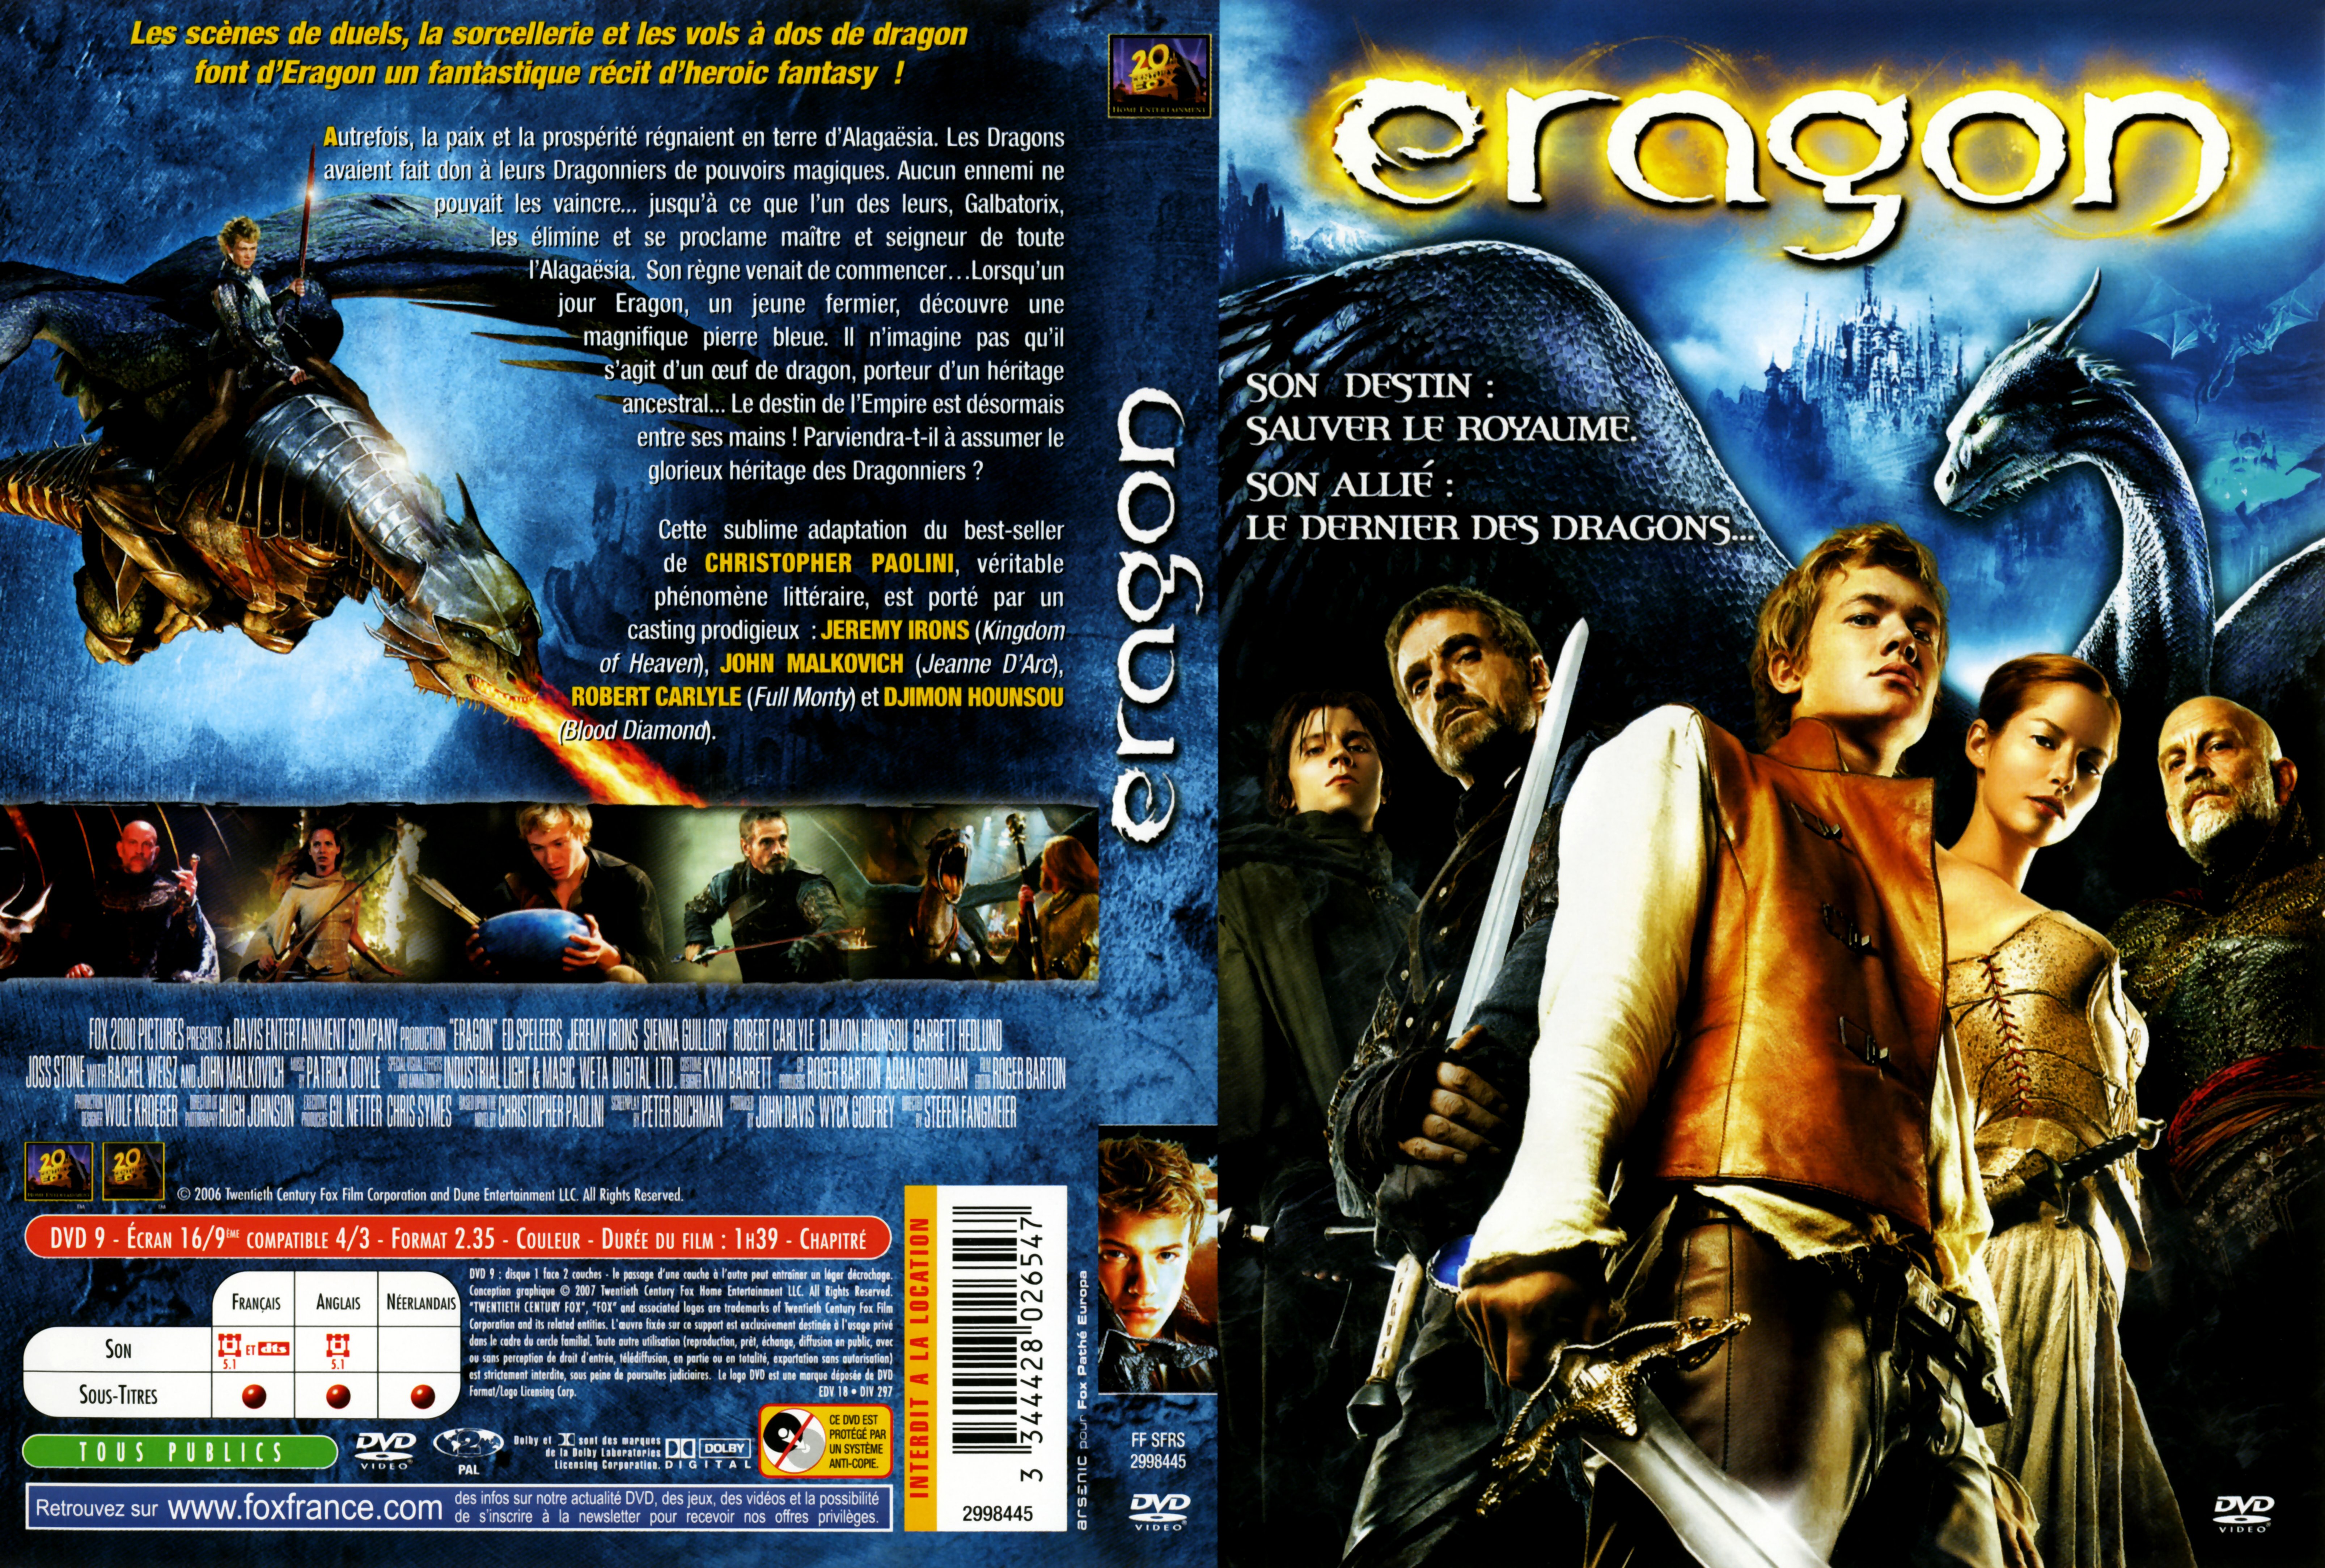 Jaquette DVD Eragon v2